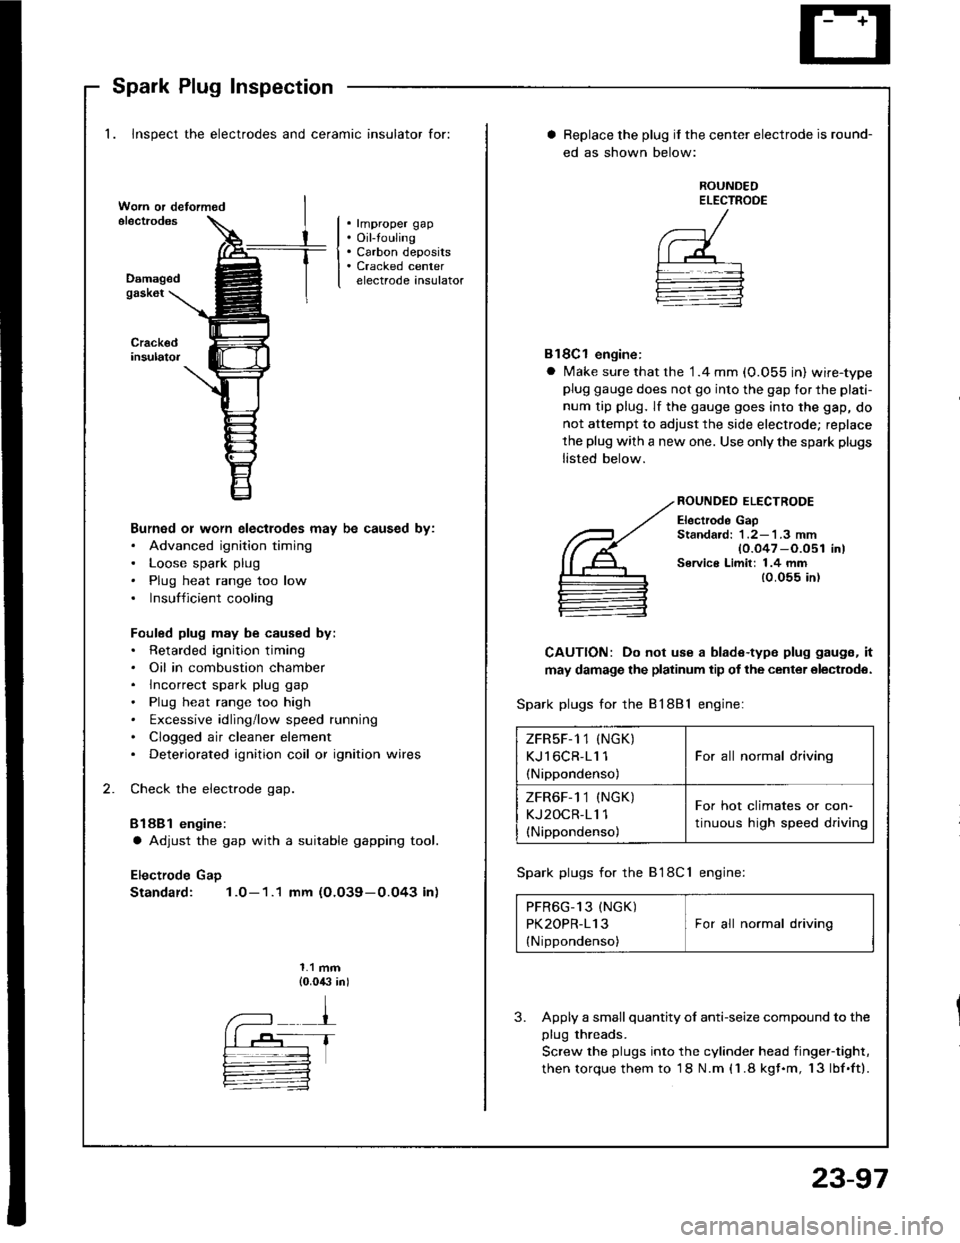 HONDA INTEGRA 1994 4.G Workshop Manual Spark Plug Inspection
1. Inspect the electrodes and ceramic insulator for:
. rmproper gap. Oil-touling. Carbon deposits. Cracked centerelectrode insulatorDamagedgask6t
Burned or worn electlodes may be